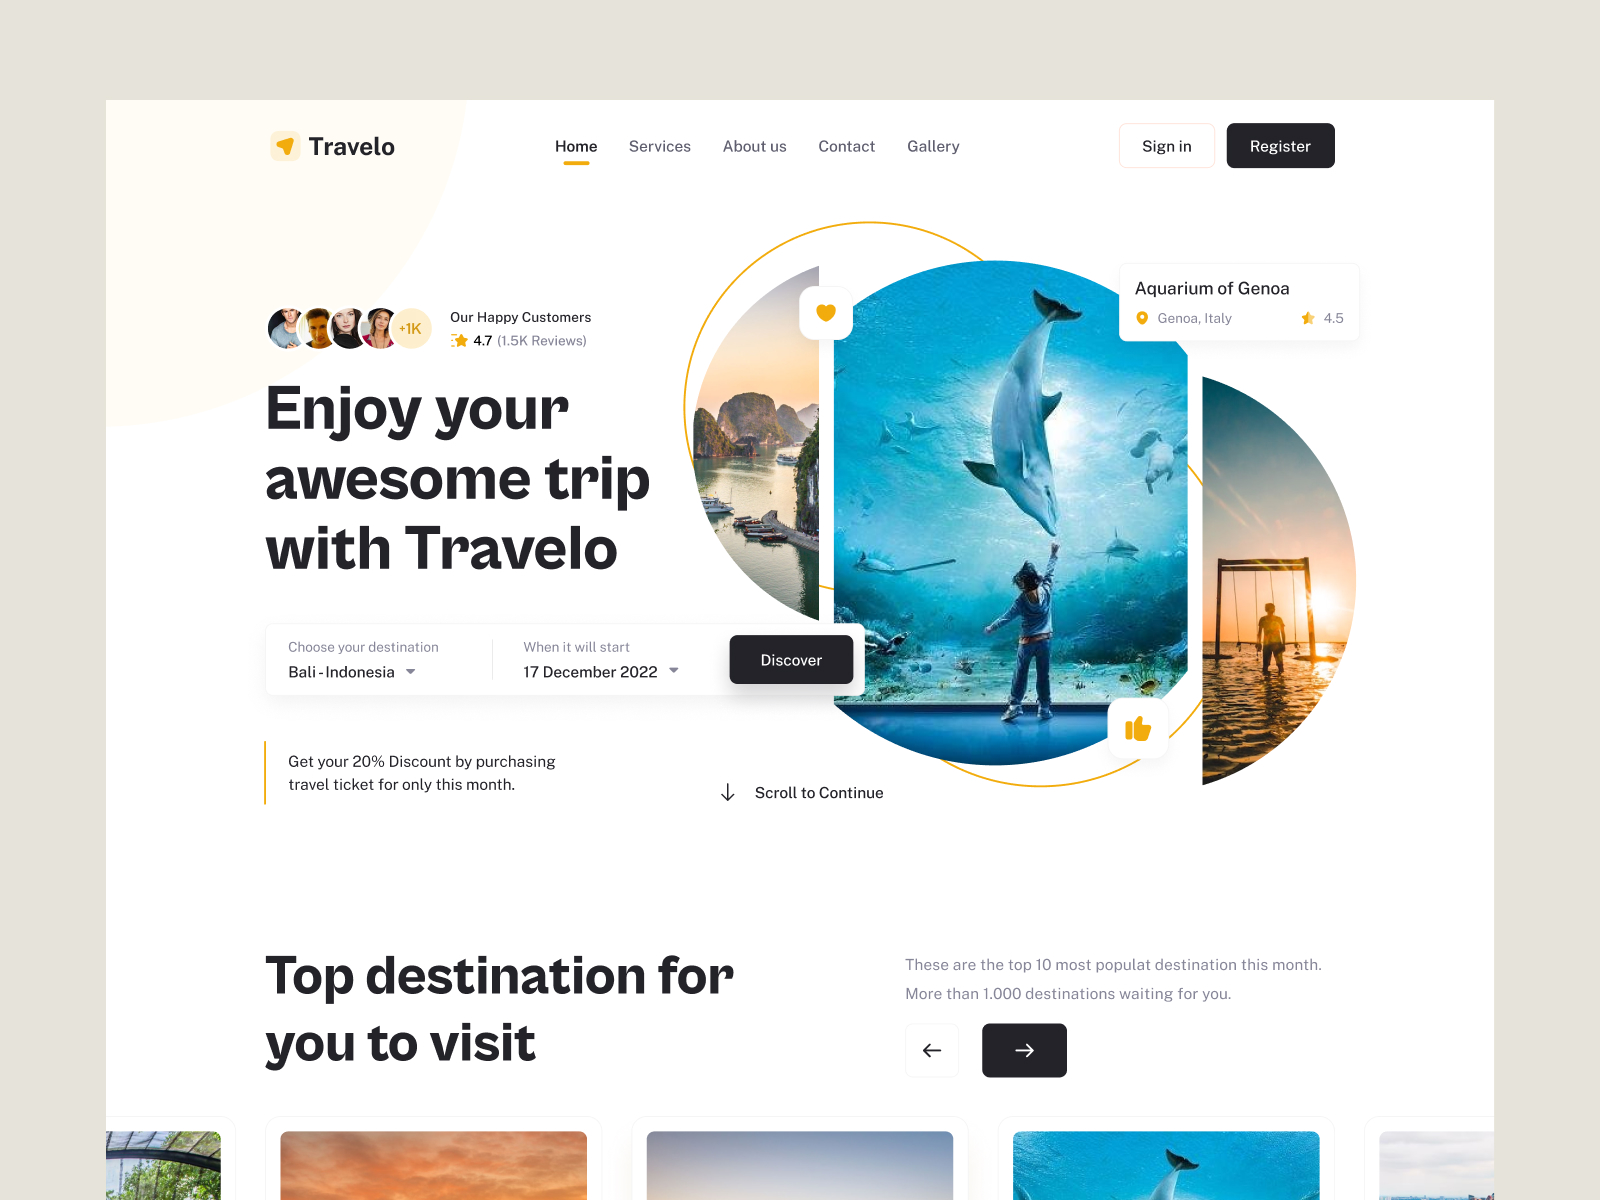 Travel Agency Landing Page: Cùng với sự tăng trưởng của ngành đi du lịch, thiết kế trang web Landing Page giới thiệu sản phẩm và dịch vụ của các công ty du lịch đang trở nên quan trọng hơn bao giờ hết. Sử dụng các trang web Landing Page chuyên nghiệp, những người muốn đi du lịch có thể tìm kiếm và đặt các chuyến đi hấp dẫn mà không tốn quá nhiều thời gian.